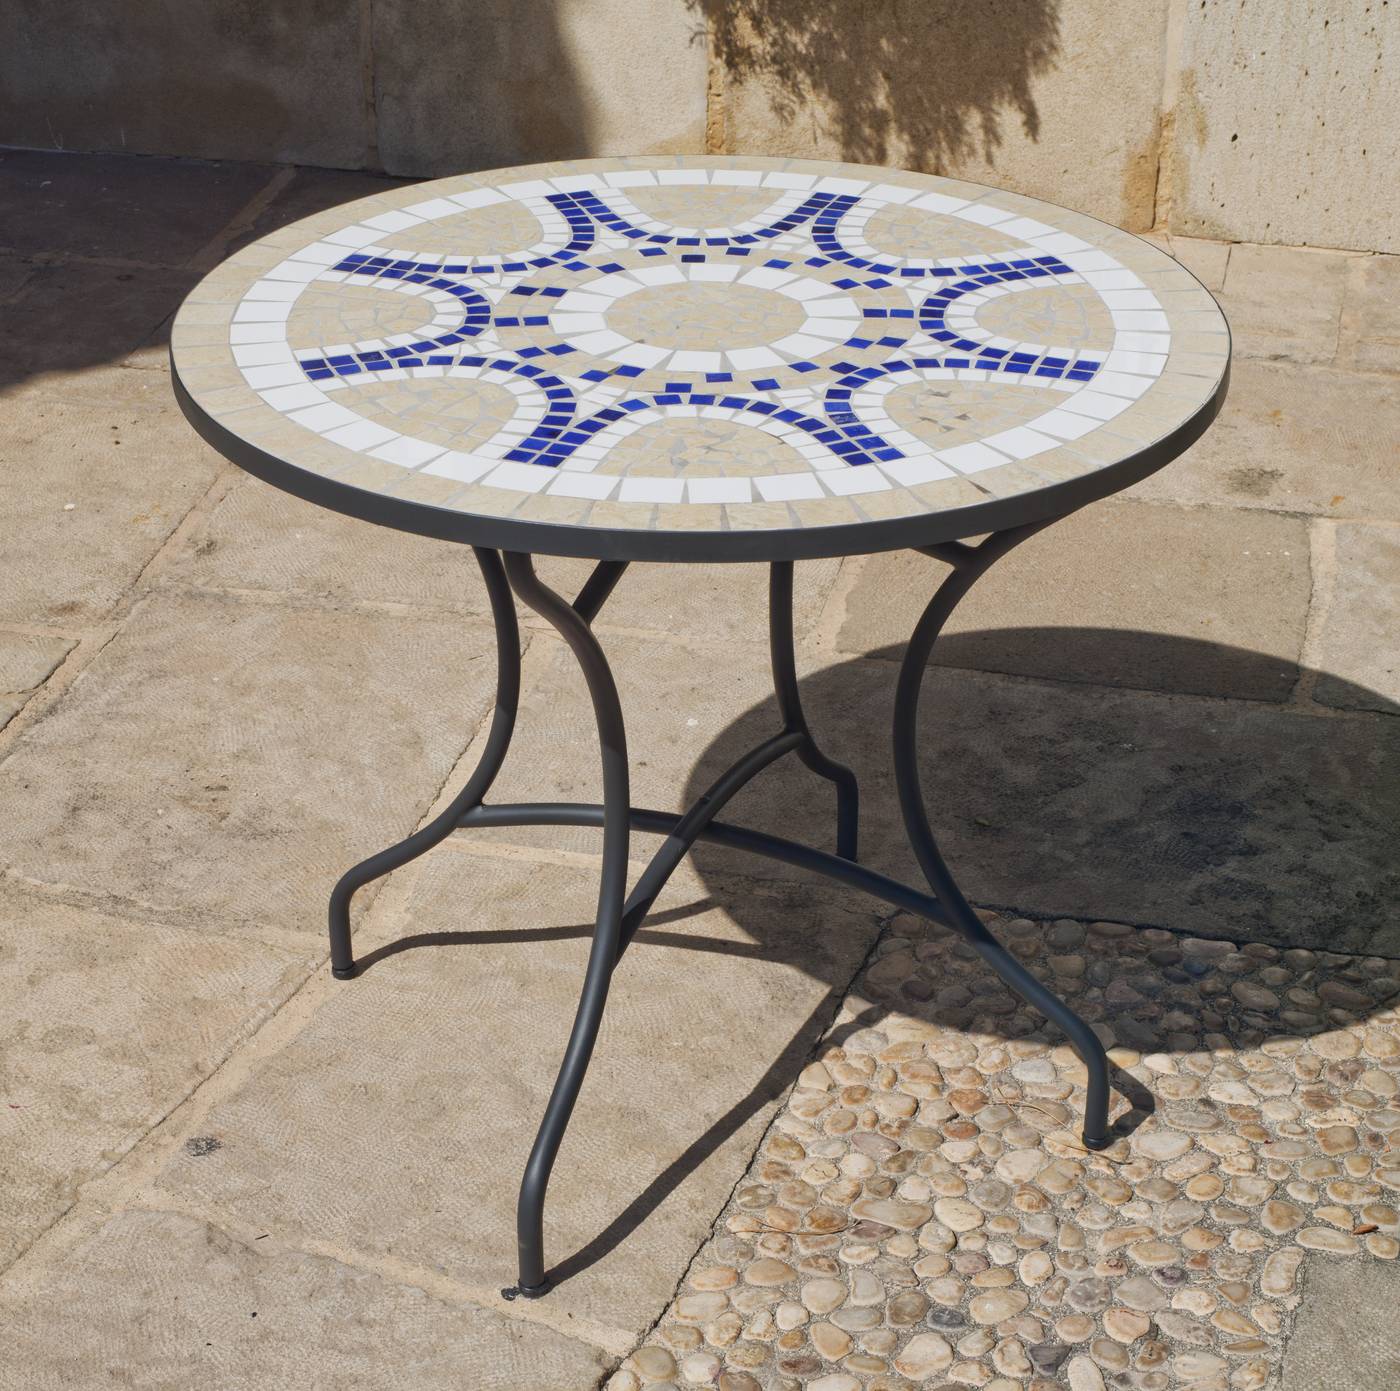 Set Mosaico Trebol-Bahia 75-4 - Conjunto de forja para jardín: 1 mesa redonda 75 cm. de acero forjado con panel mosaico + 4 sillones de ratán sintético